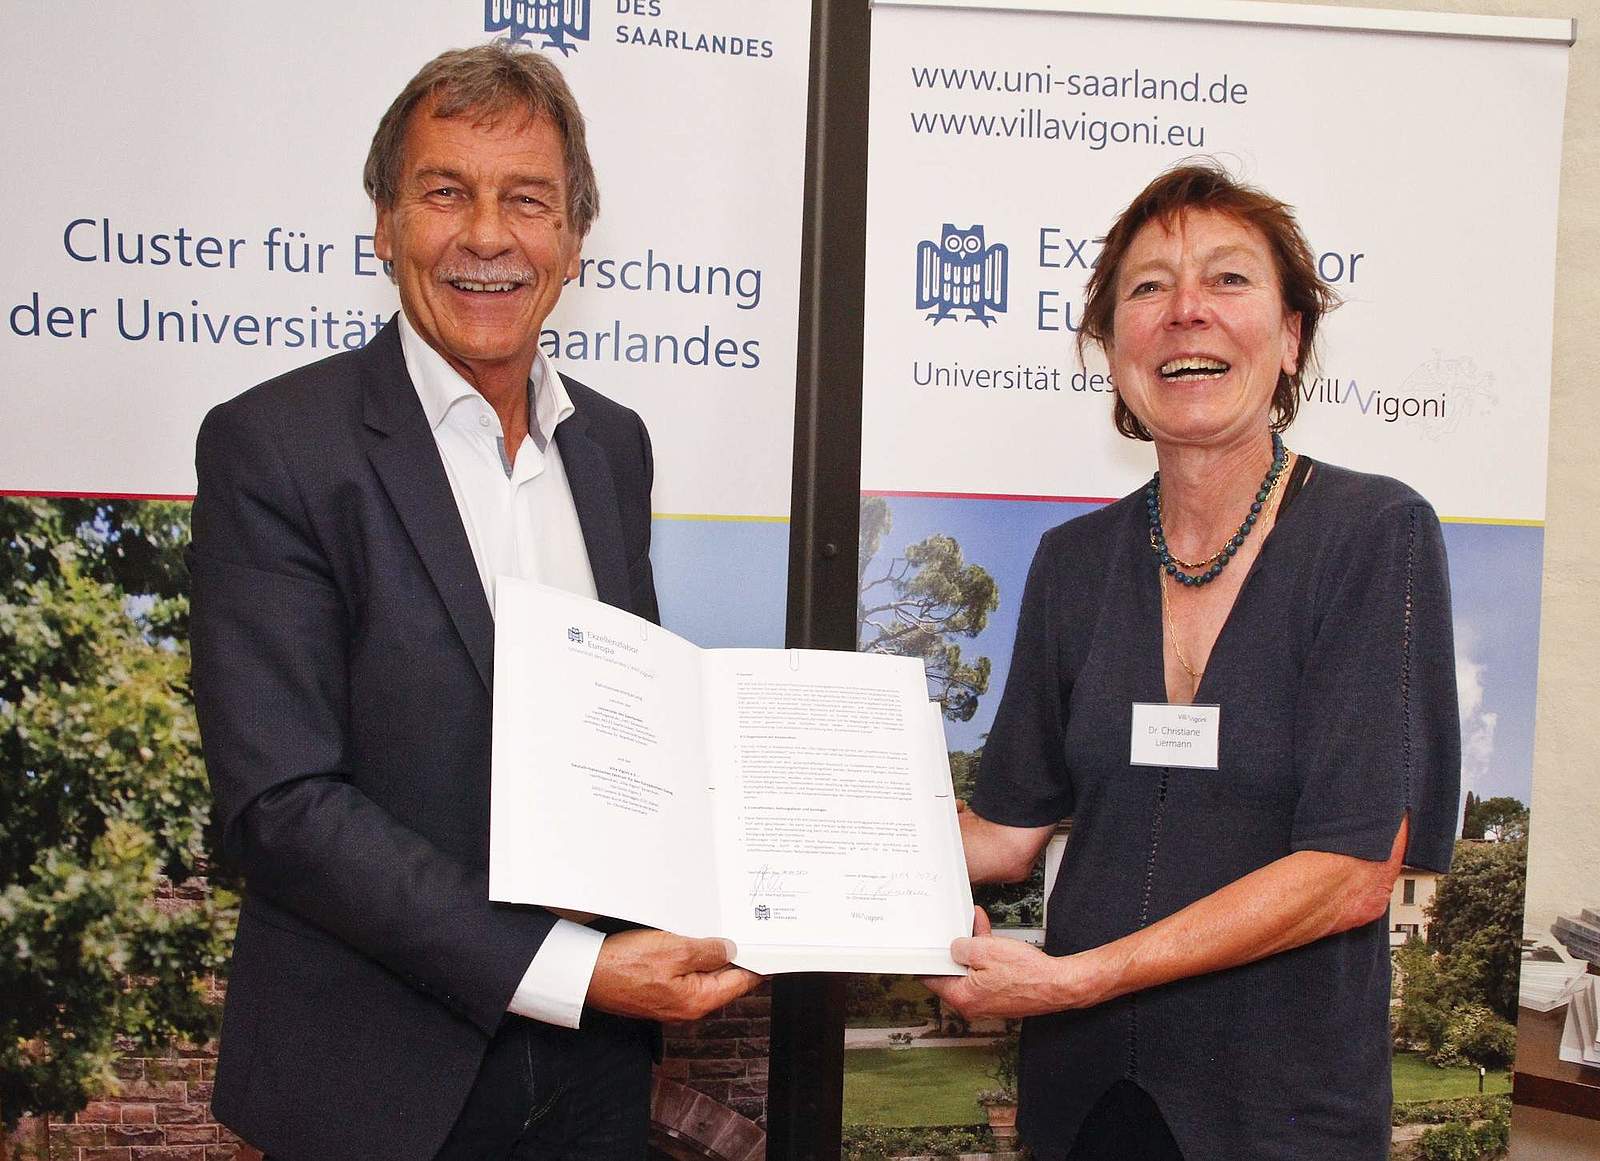 Universitätspräsident Manfred Schmitt und Christiane Liermann, Generalsekretärin der Villa Vigoni, mit der unterzeichneten Kooperationsvereinbarung